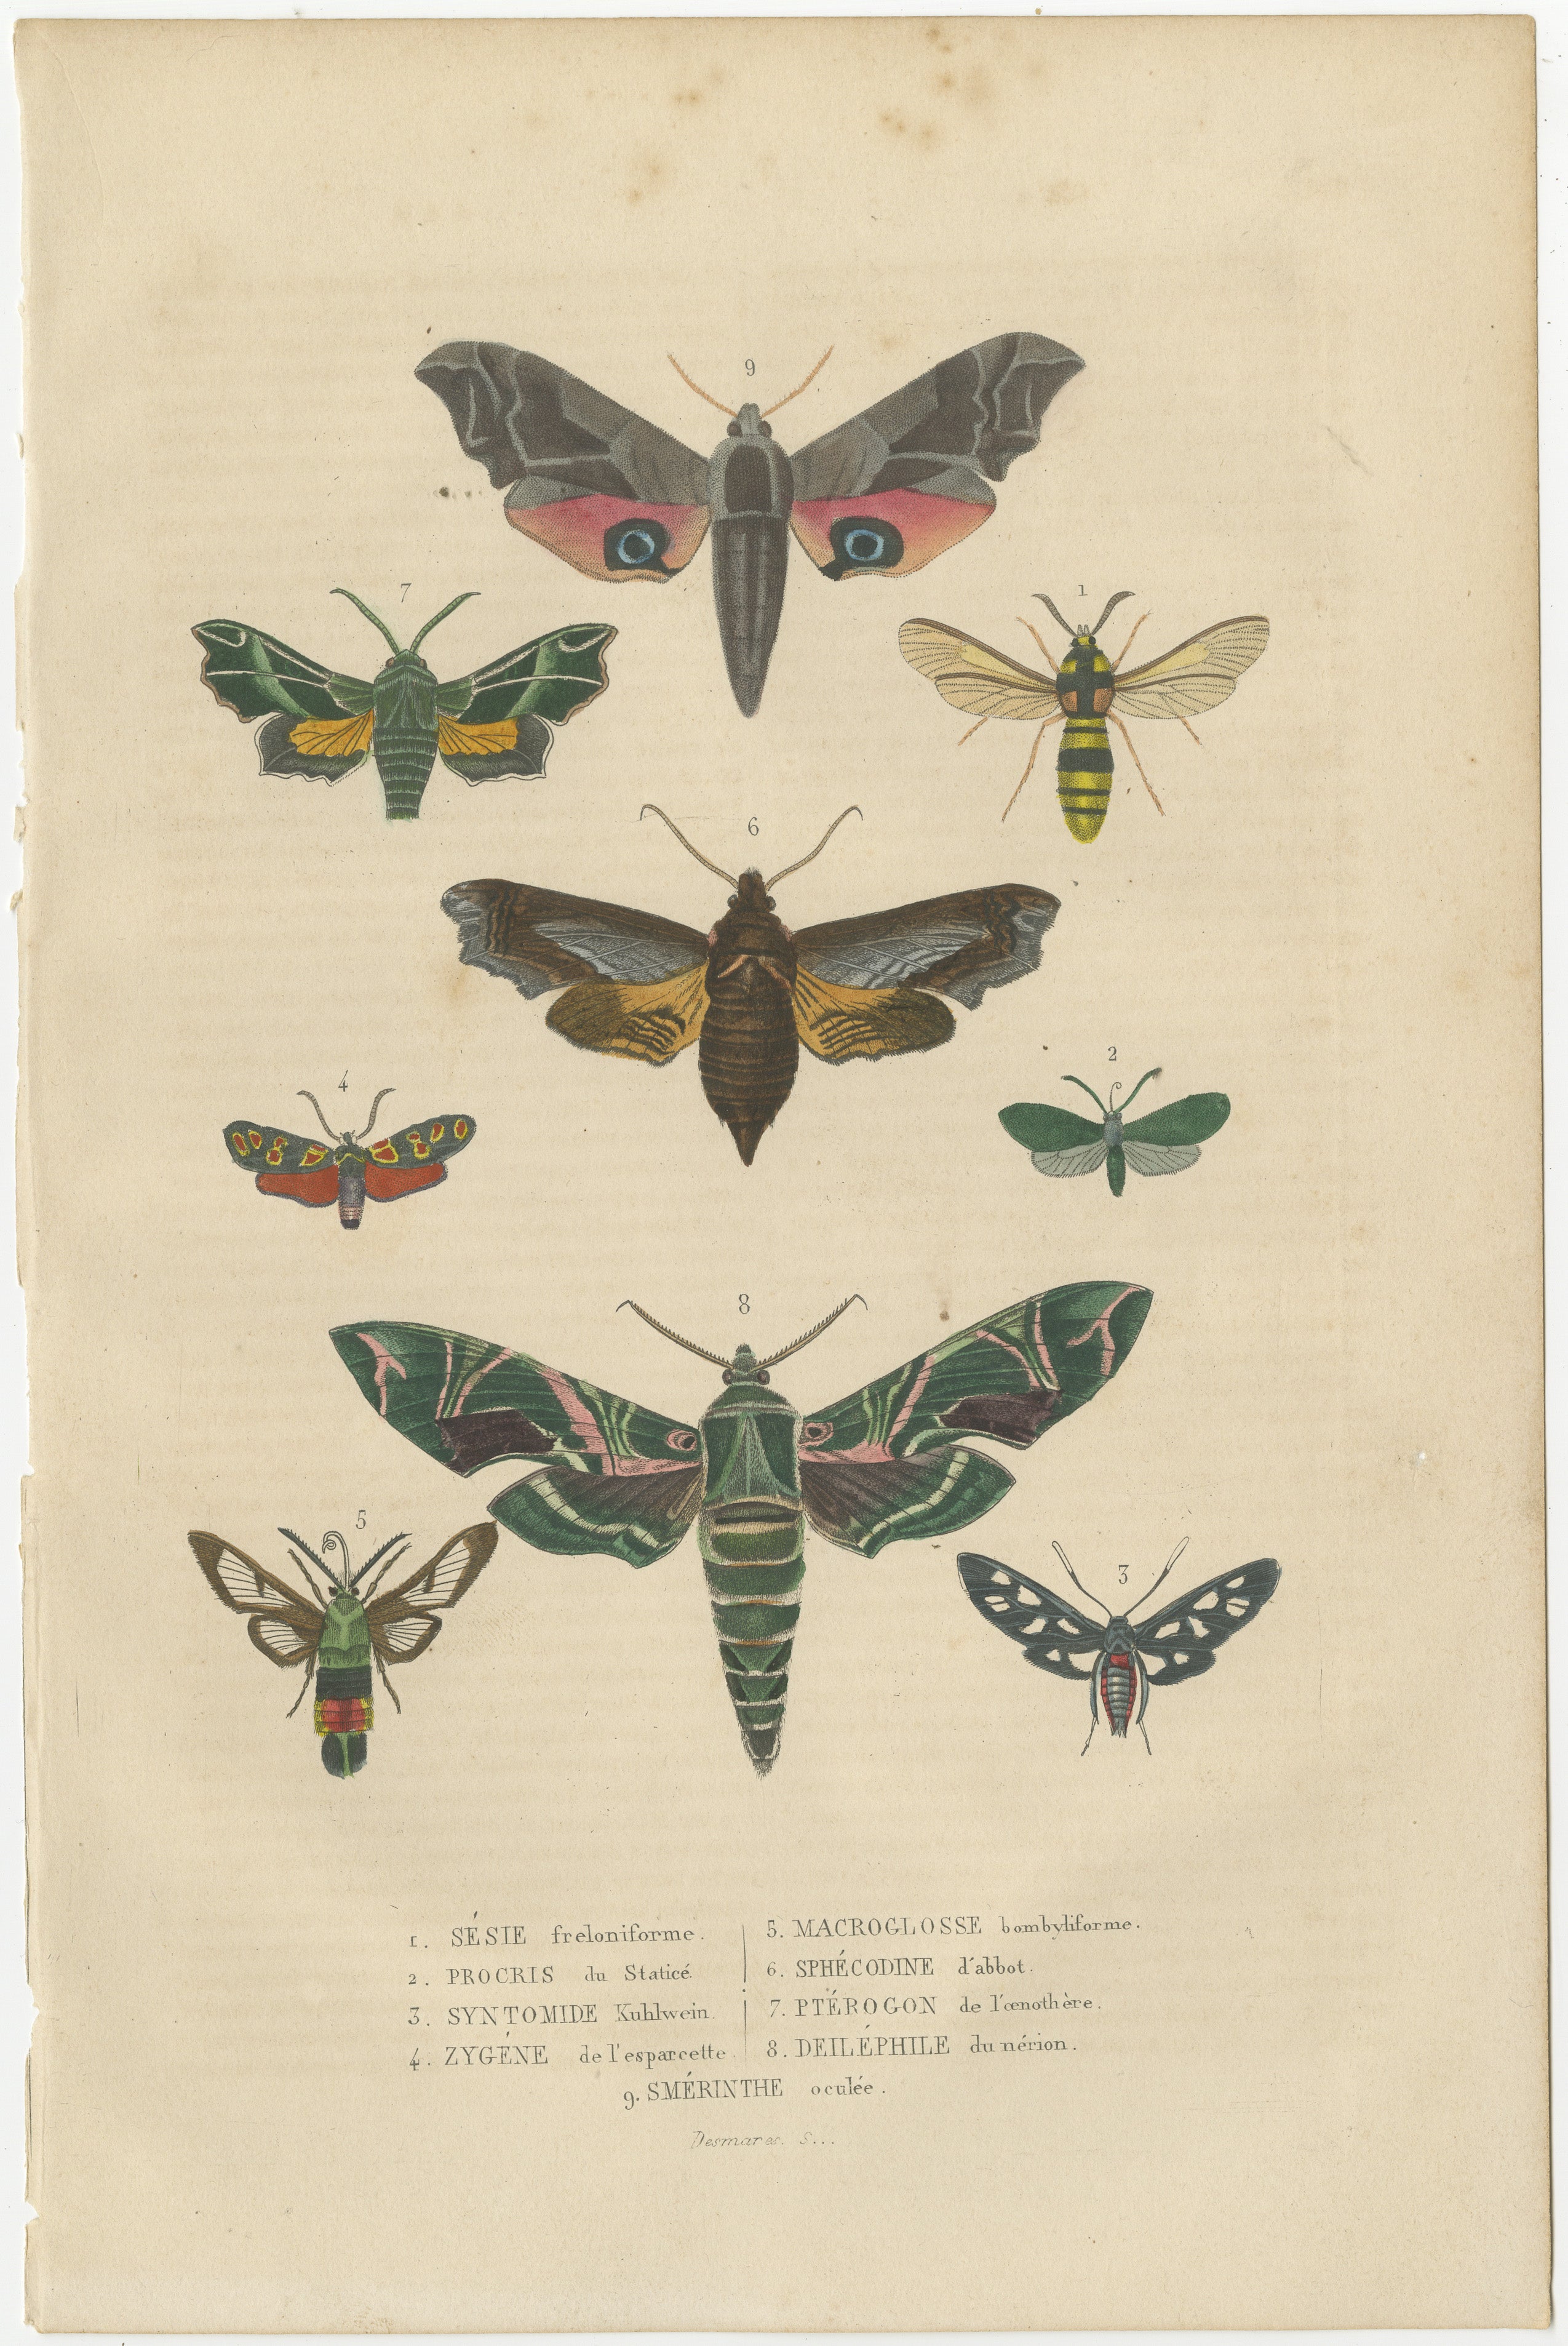 Gravure ancienne coloriée à la main. Cette illustration particulière se concentre sur diverses espèces de papillons et de mites, mettant en valeur les motifs de leurs ailes et les formes de leur corps dans des couleurs vibrantes et avec un niveau de